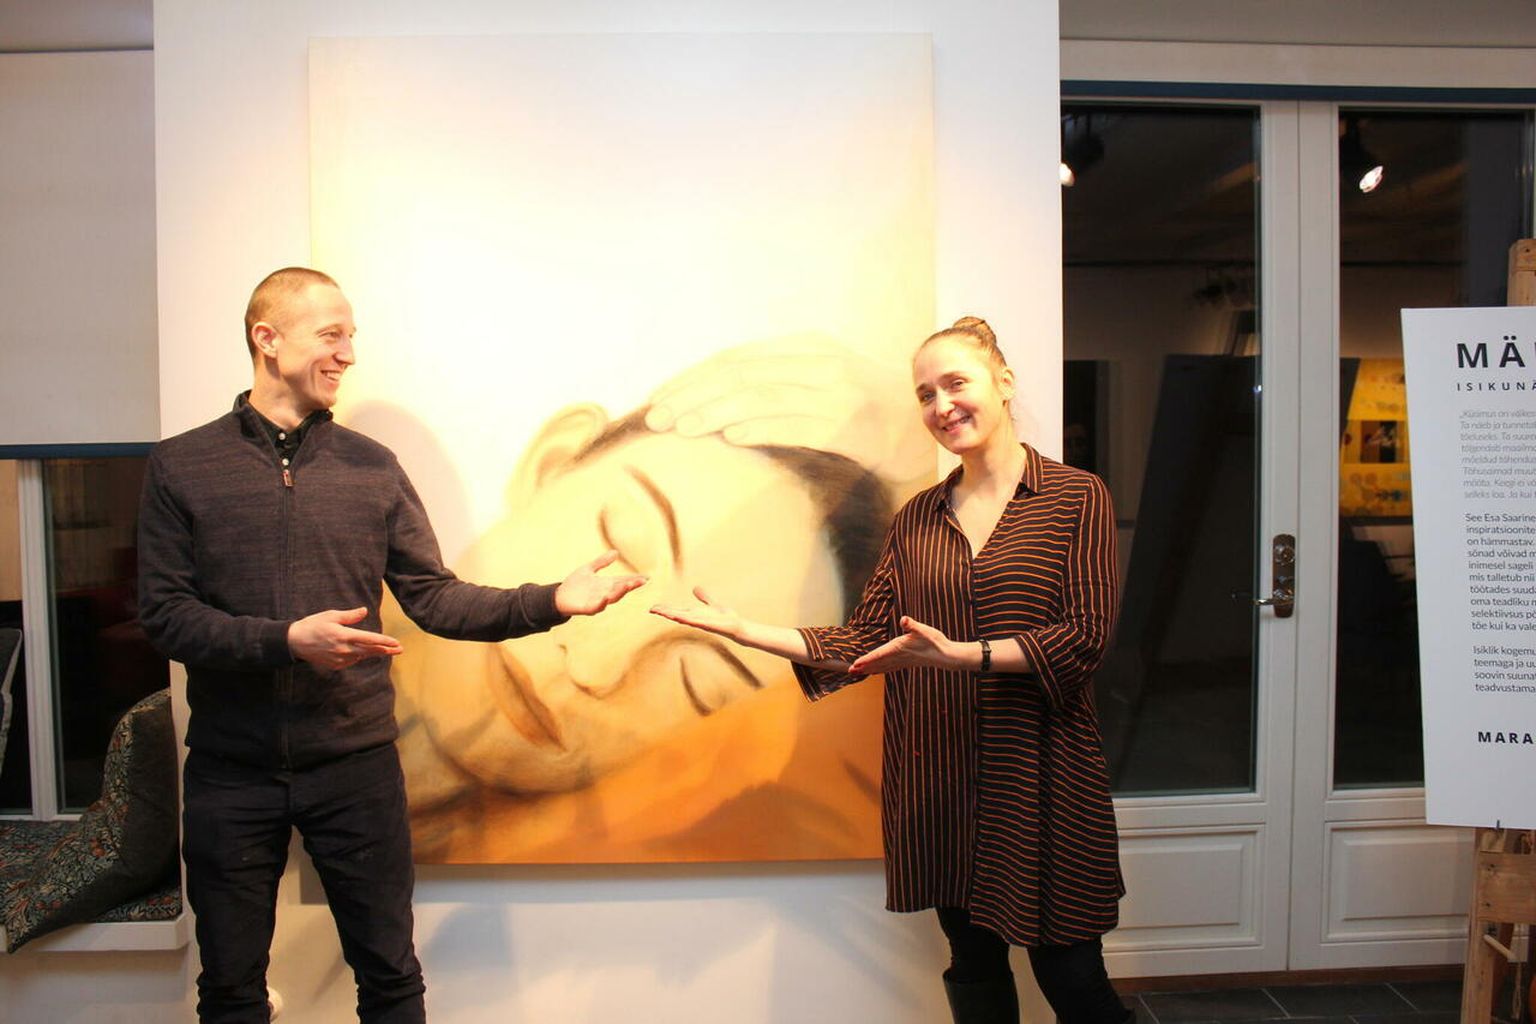 Nestori ja Mara Ljutjuk möödunud pühapäeval Esna galeriis näituse "Mälu" avamisel.